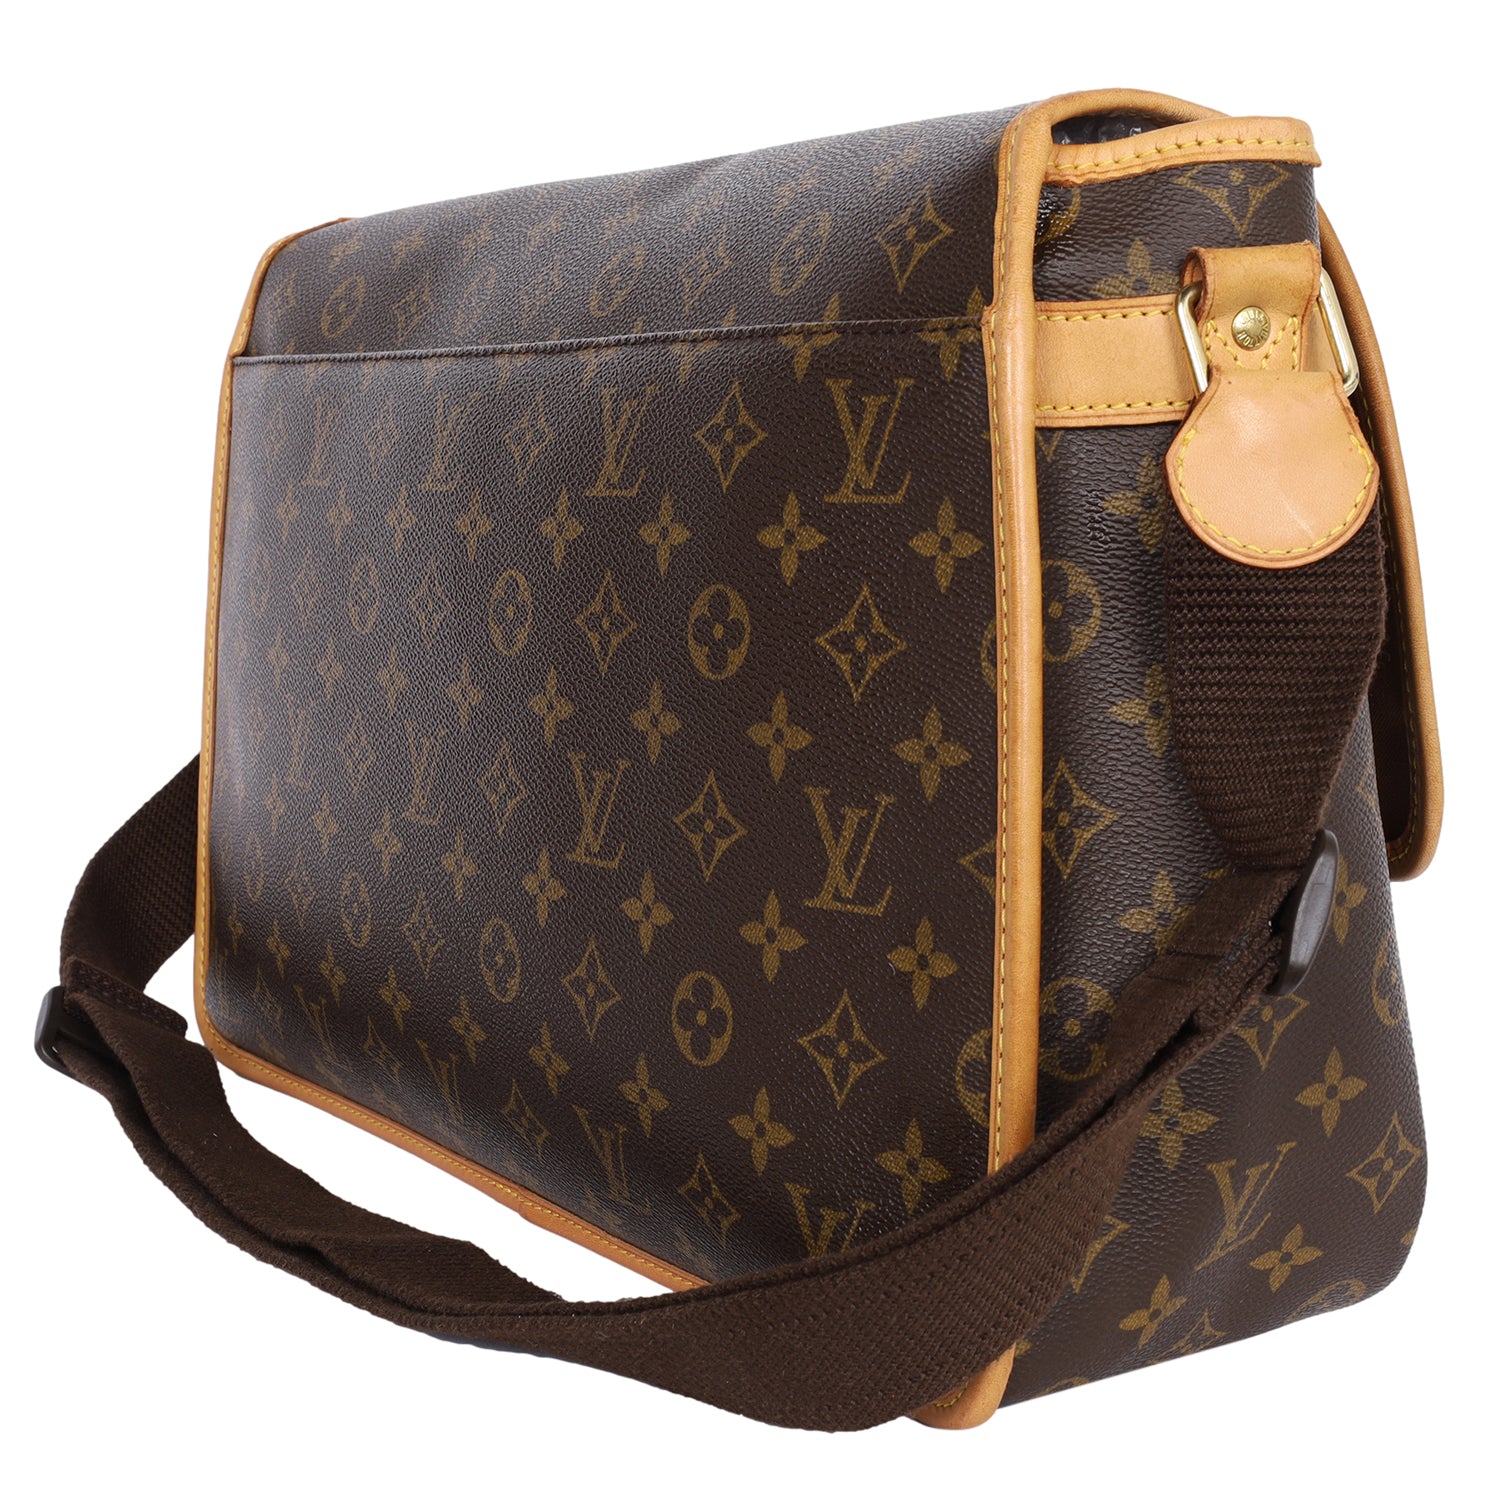 Shop authentic Louis Vuitton Monogram Abbesses Messenger Bag at